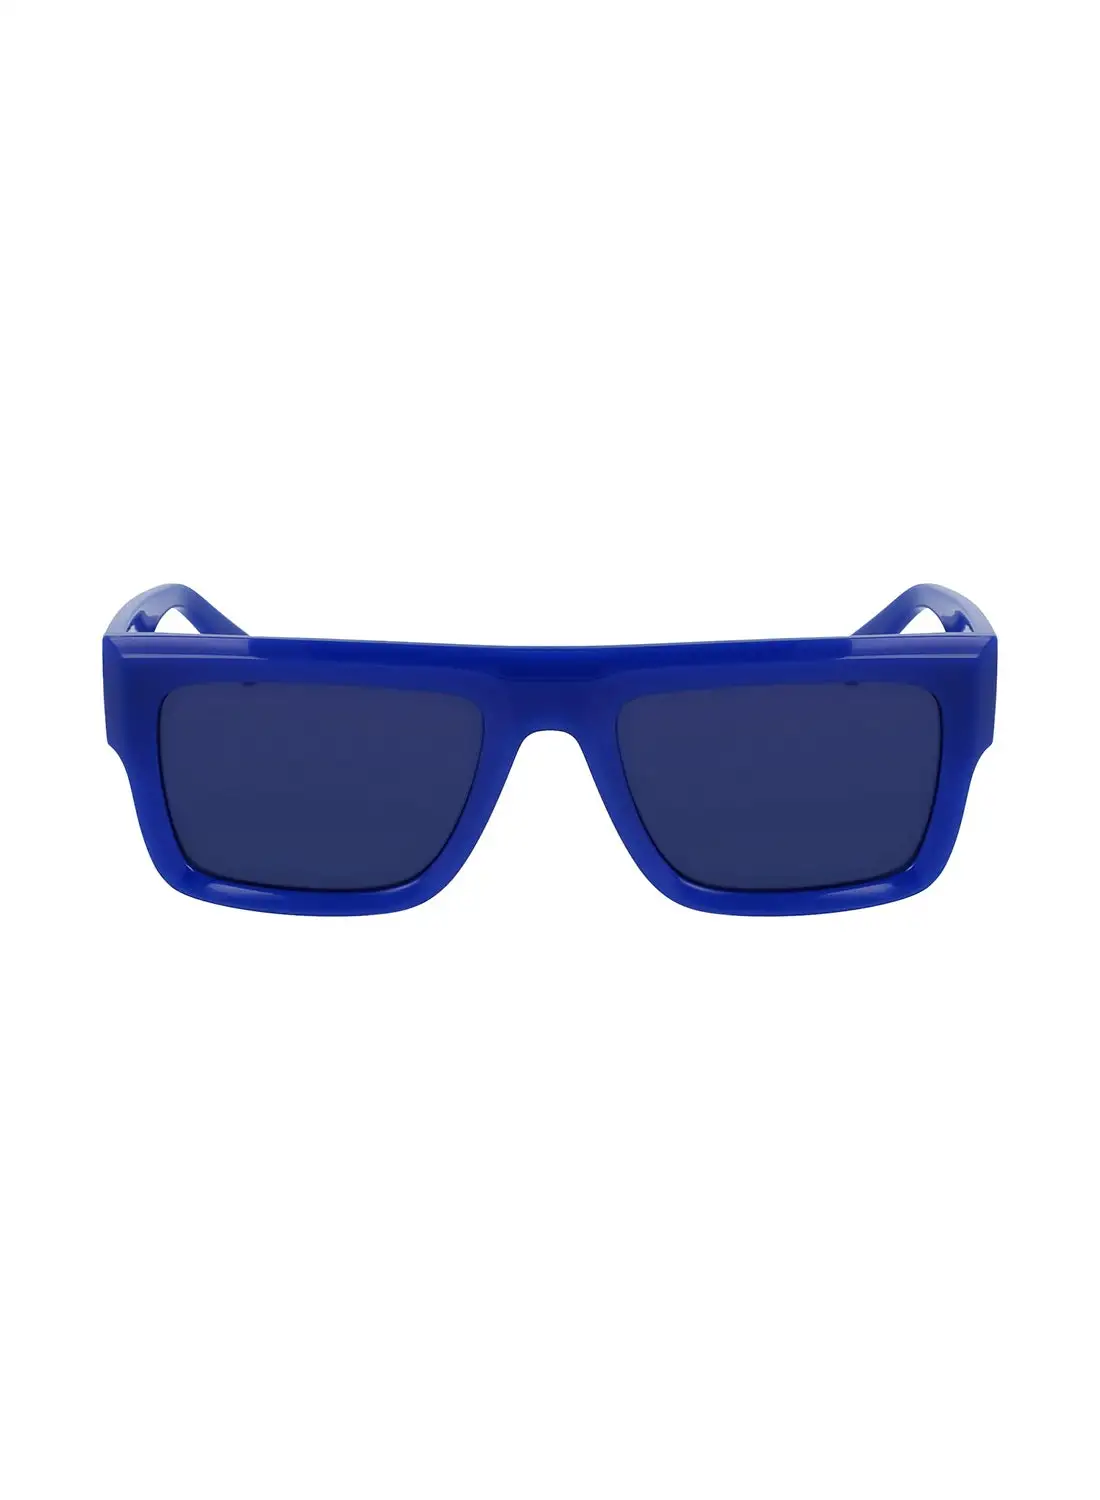 Calvin Klein Jeans Unisex Rectangular Sunglasses - CKJ23642S-400-5419 - Lens Size: 54 Mm